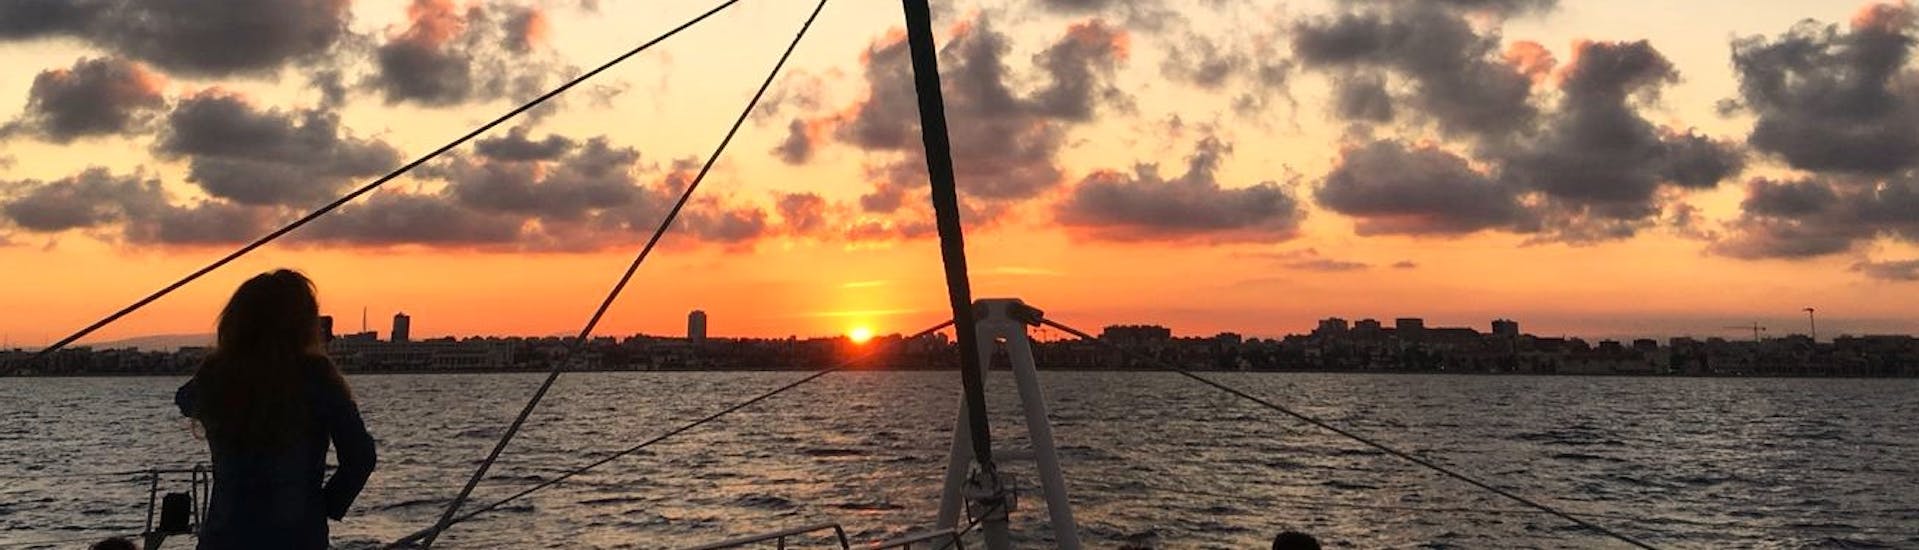 Un magnifique coucher de soleil sur la baie de Malaga, avec des teintes rouges et orange, lors d'une balade en catamaran avec Mundo Marino Costa del Sol.